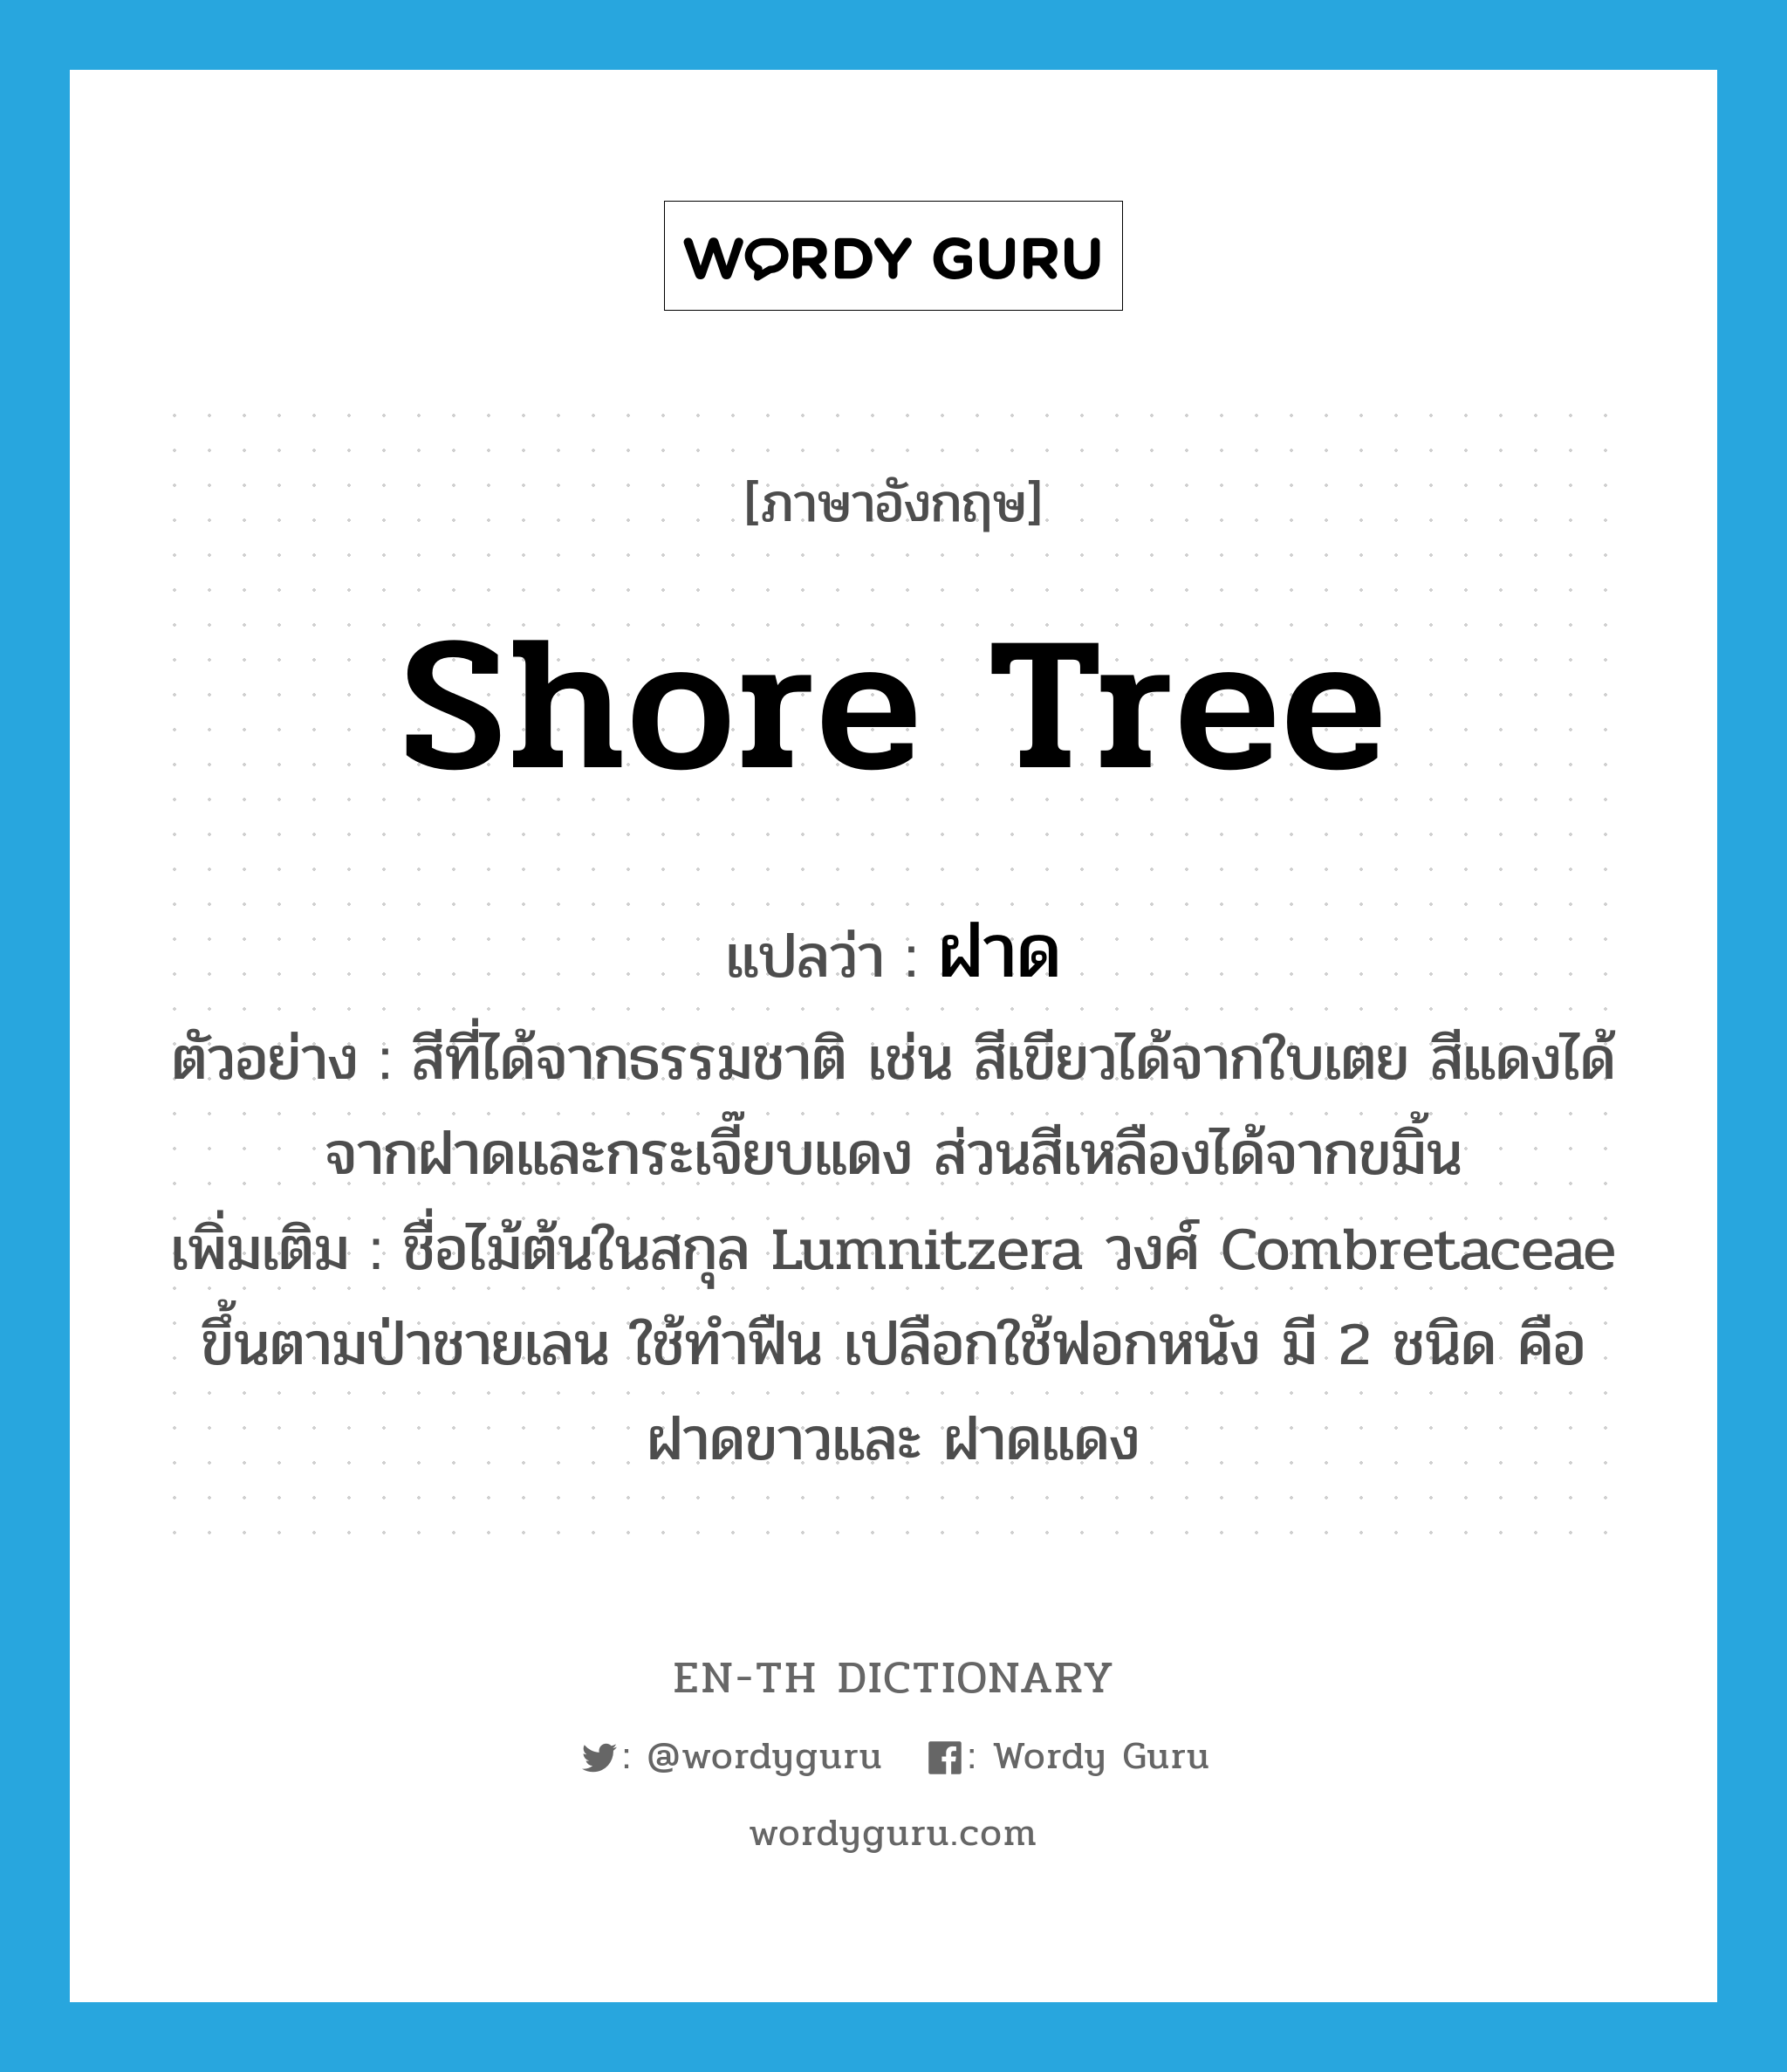 shore tree แปลว่า?, คำศัพท์ภาษาอังกฤษ shore tree แปลว่า ฝาด ประเภท N ตัวอย่าง สีที่ได้จากธรรมชาติ เช่น สีเขียวได้จากใบเตย สีแดงได้จากฝาดและกระเจี๊ยบแดง ส่วนสีเหลืองได้จากขมิ้น เพิ่มเติม ชื่อไม้ต้นในสกุล Lumnitzera วงศ์ Combretaceae ขึ้นตามป่าชายเลน ใช้ทำฟืน เปลือกใช้ฟอกหนัง มี 2 ชนิด คือ ฝาดขาวและ ฝาดแดง หมวด N